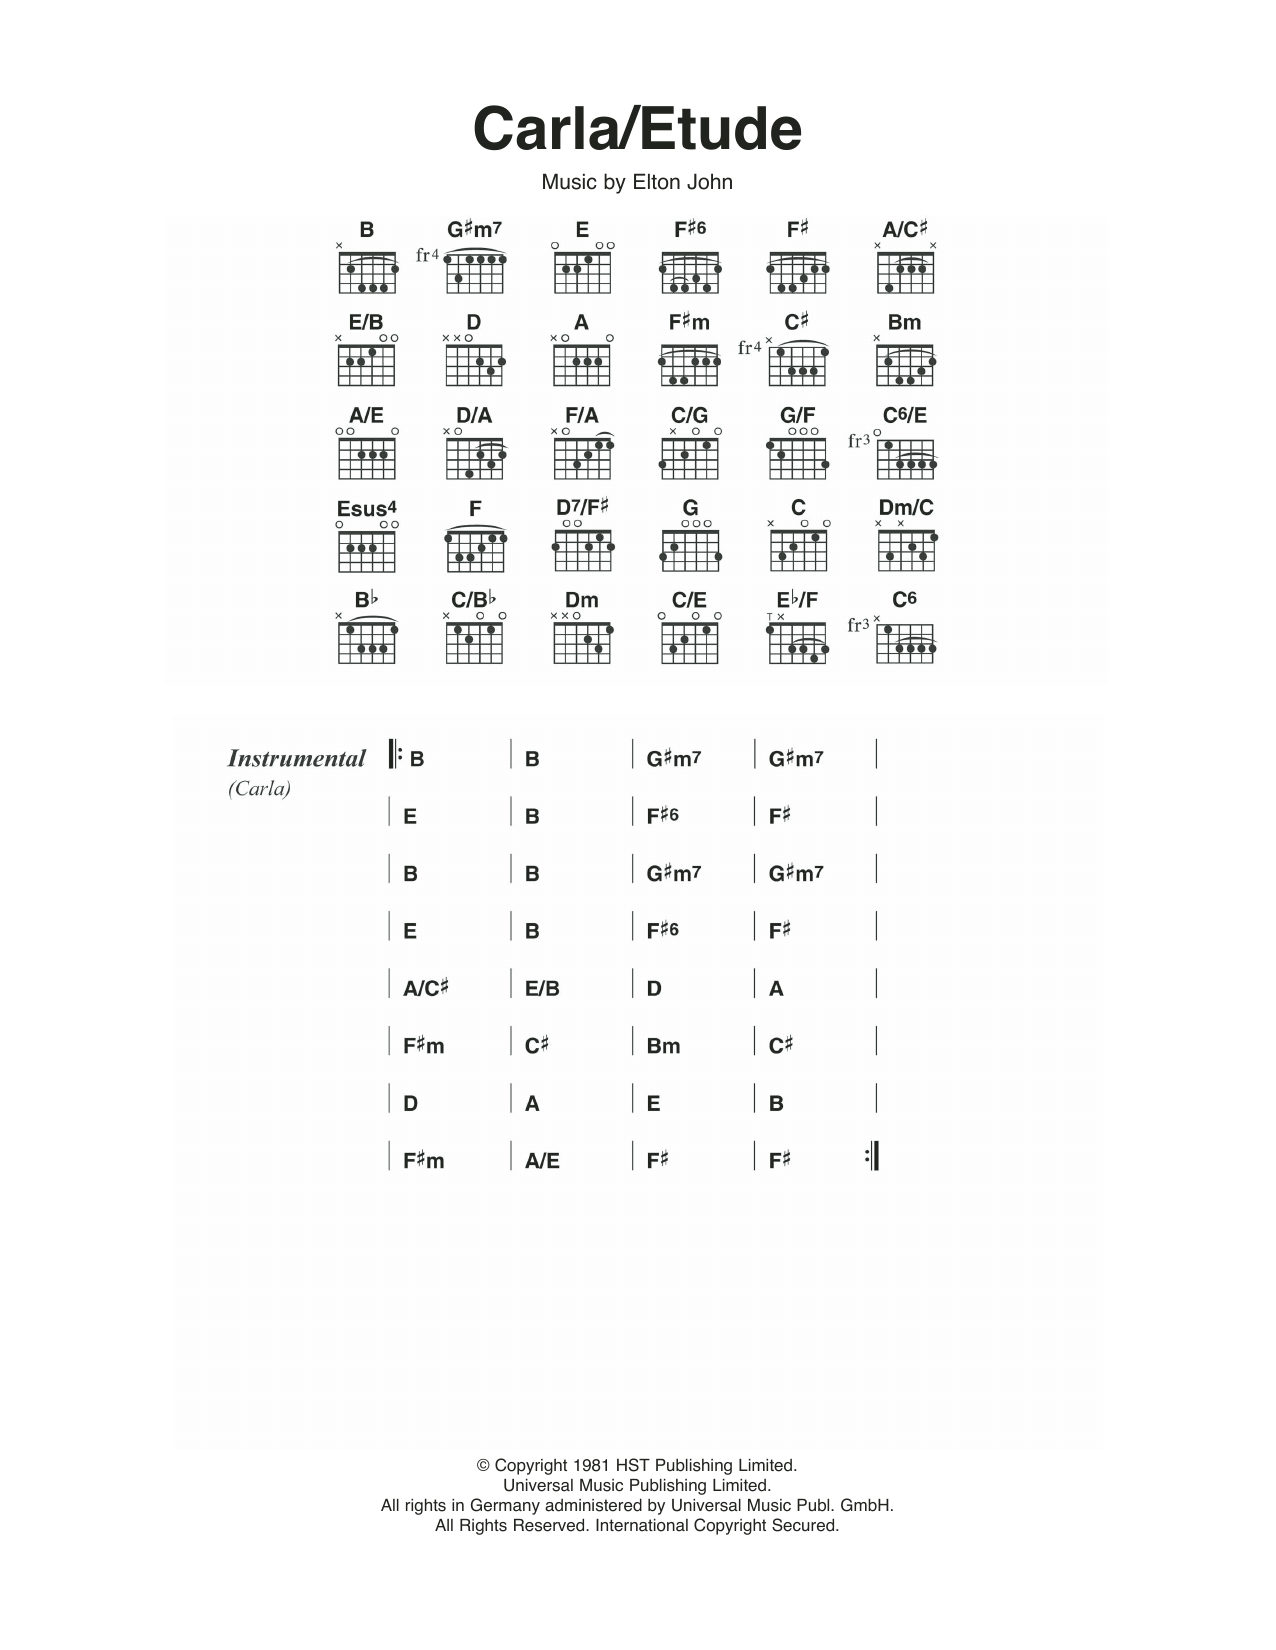 Elton John Carla/Etude Sheet Music Notes & Chords for Guitar Chords/Lyrics - Download or Print PDF